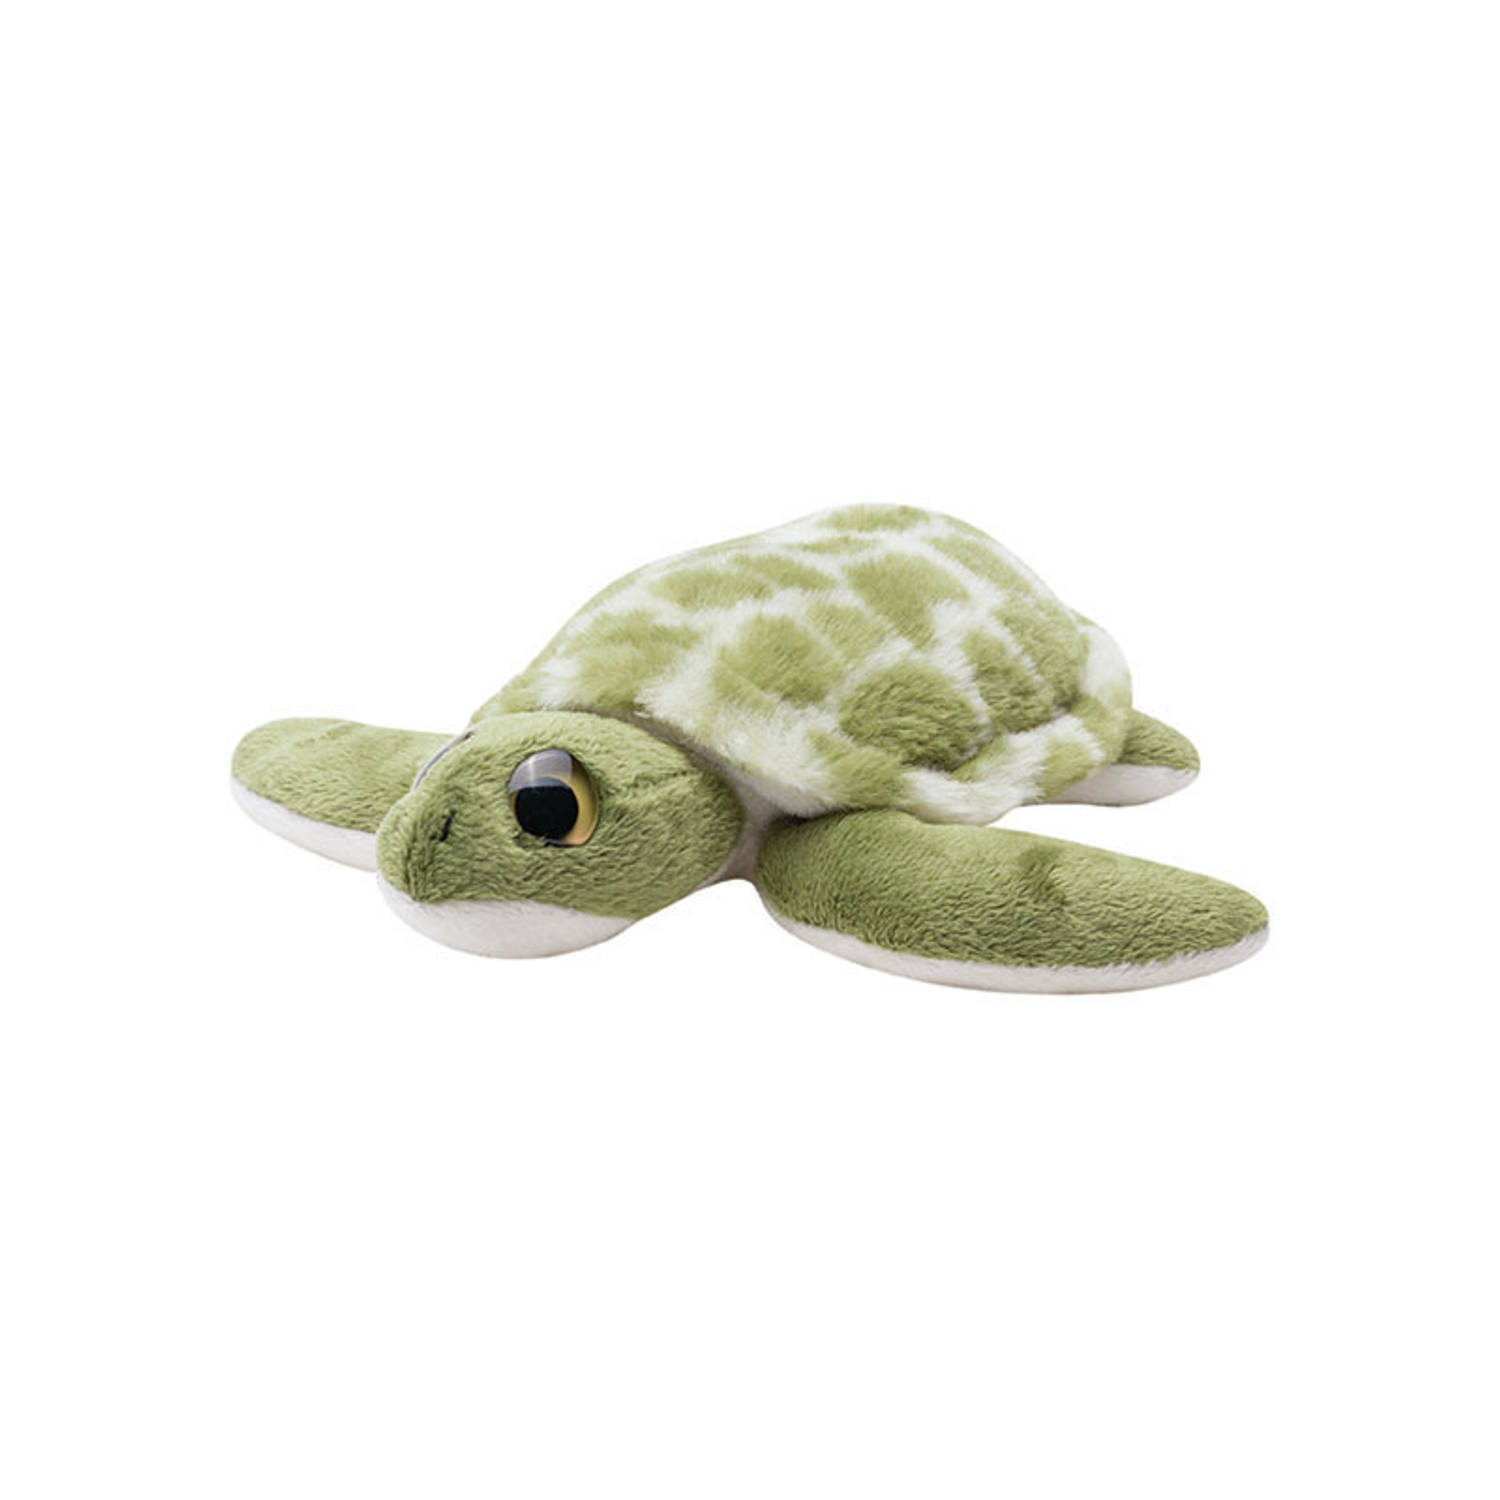 Pluche Zeeschildpad knuffeldier van 20 cm - Speelgoed dieren knuffels cadeau voor kinderen